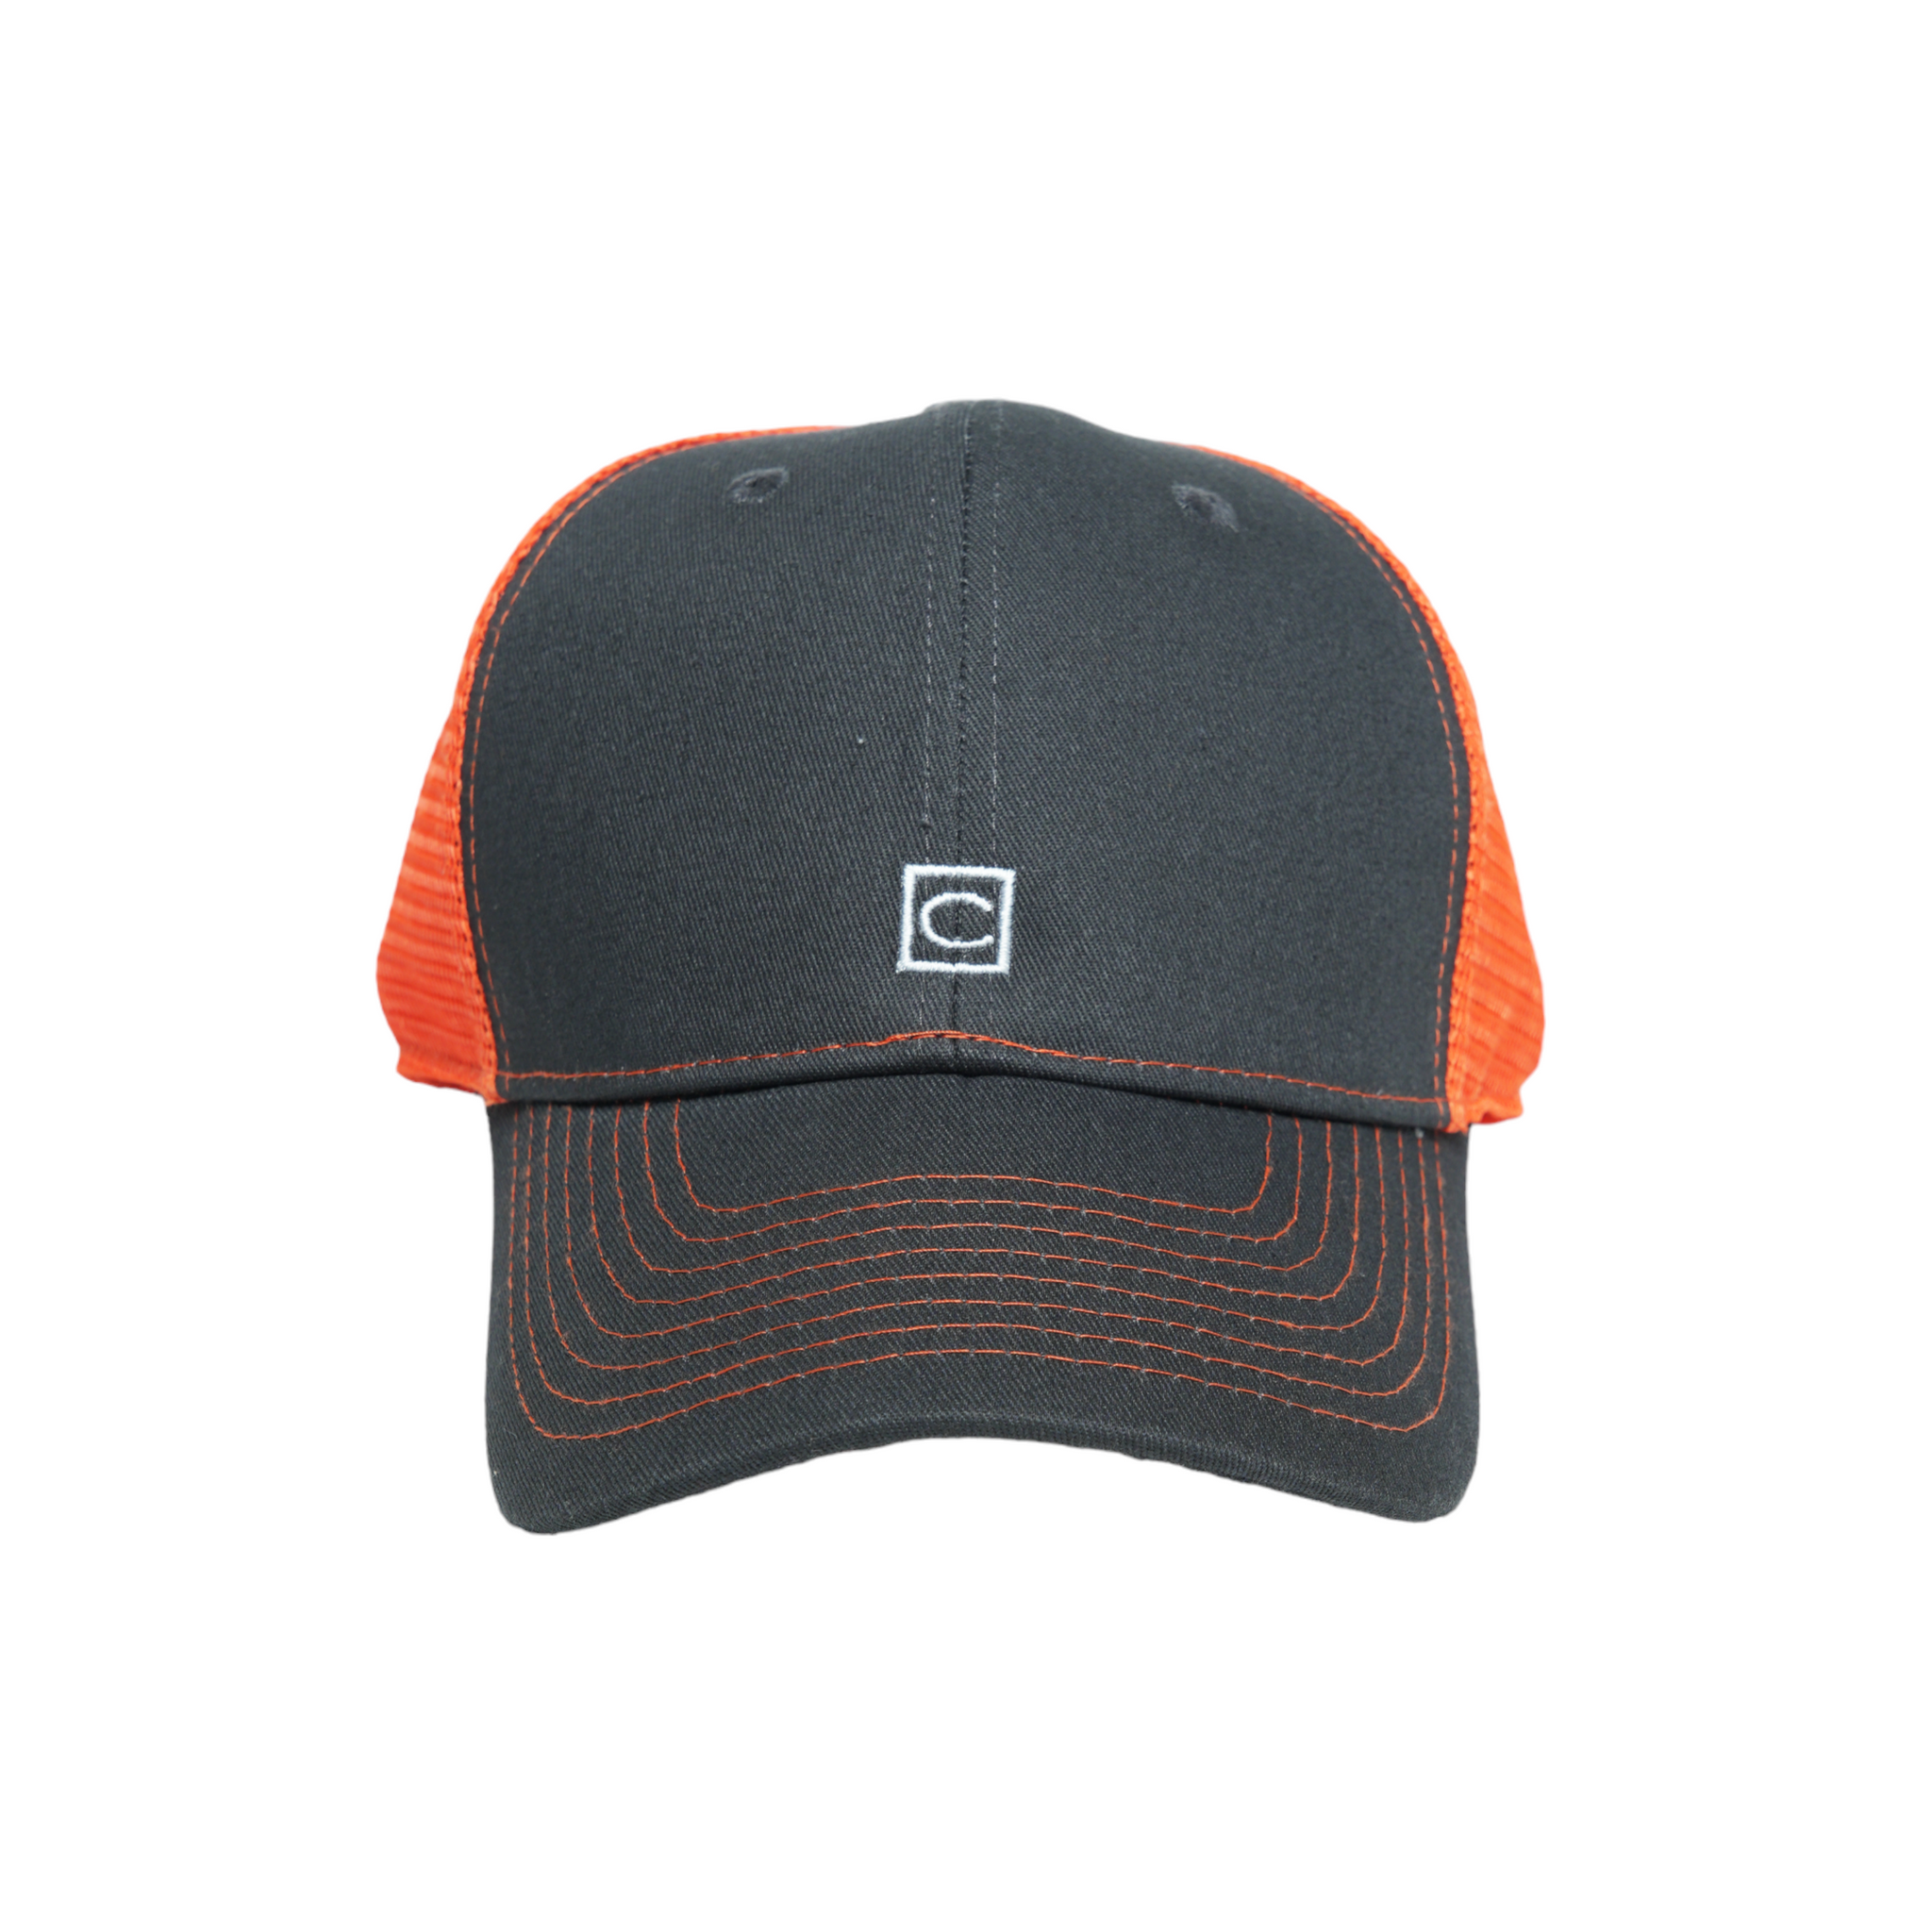 Chokore Curved Brim Mesh Baseball Cap  (Charcoal Black & Orange)